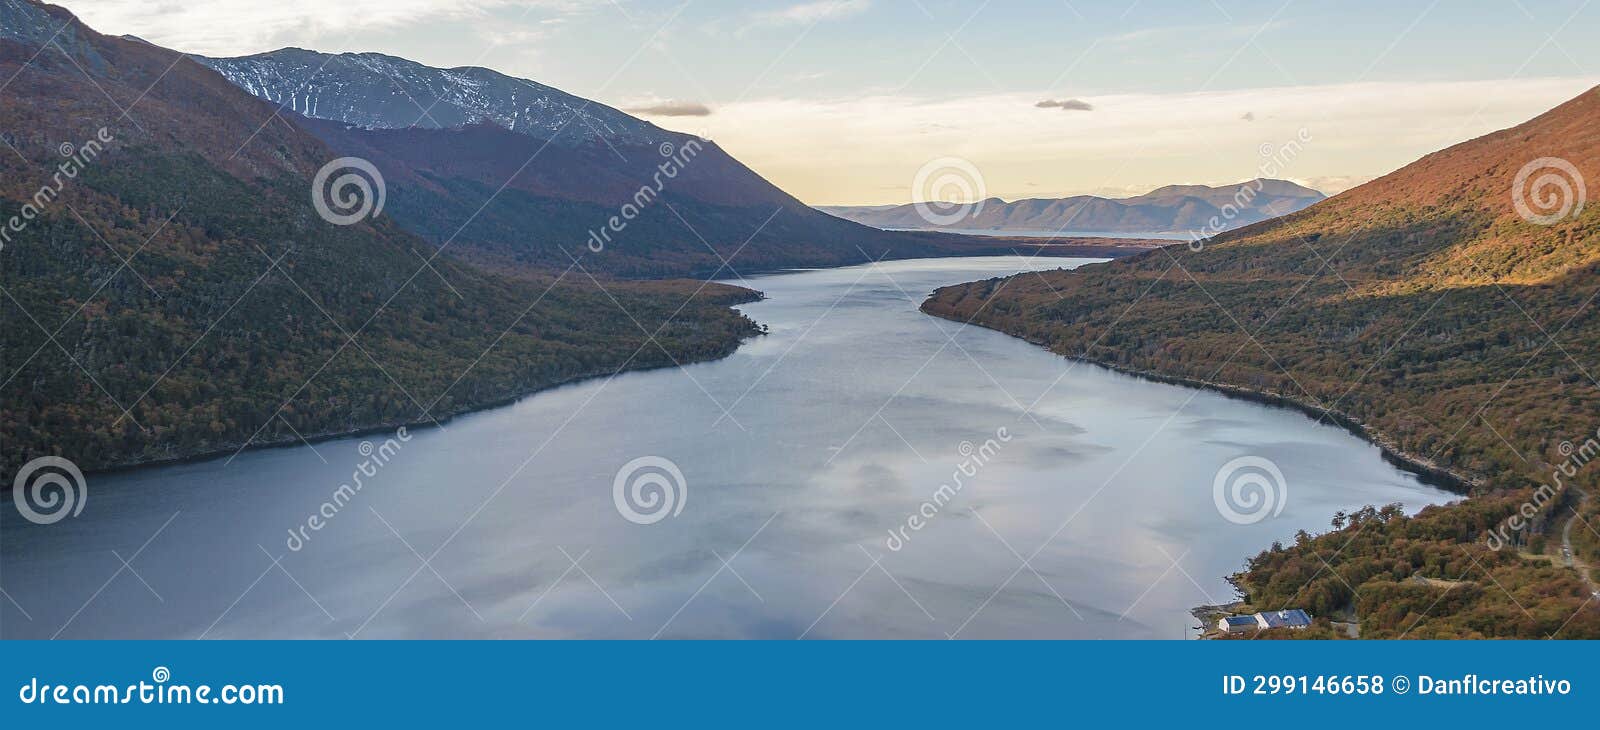 lago escondido landscape, tierra del fuego, argentina